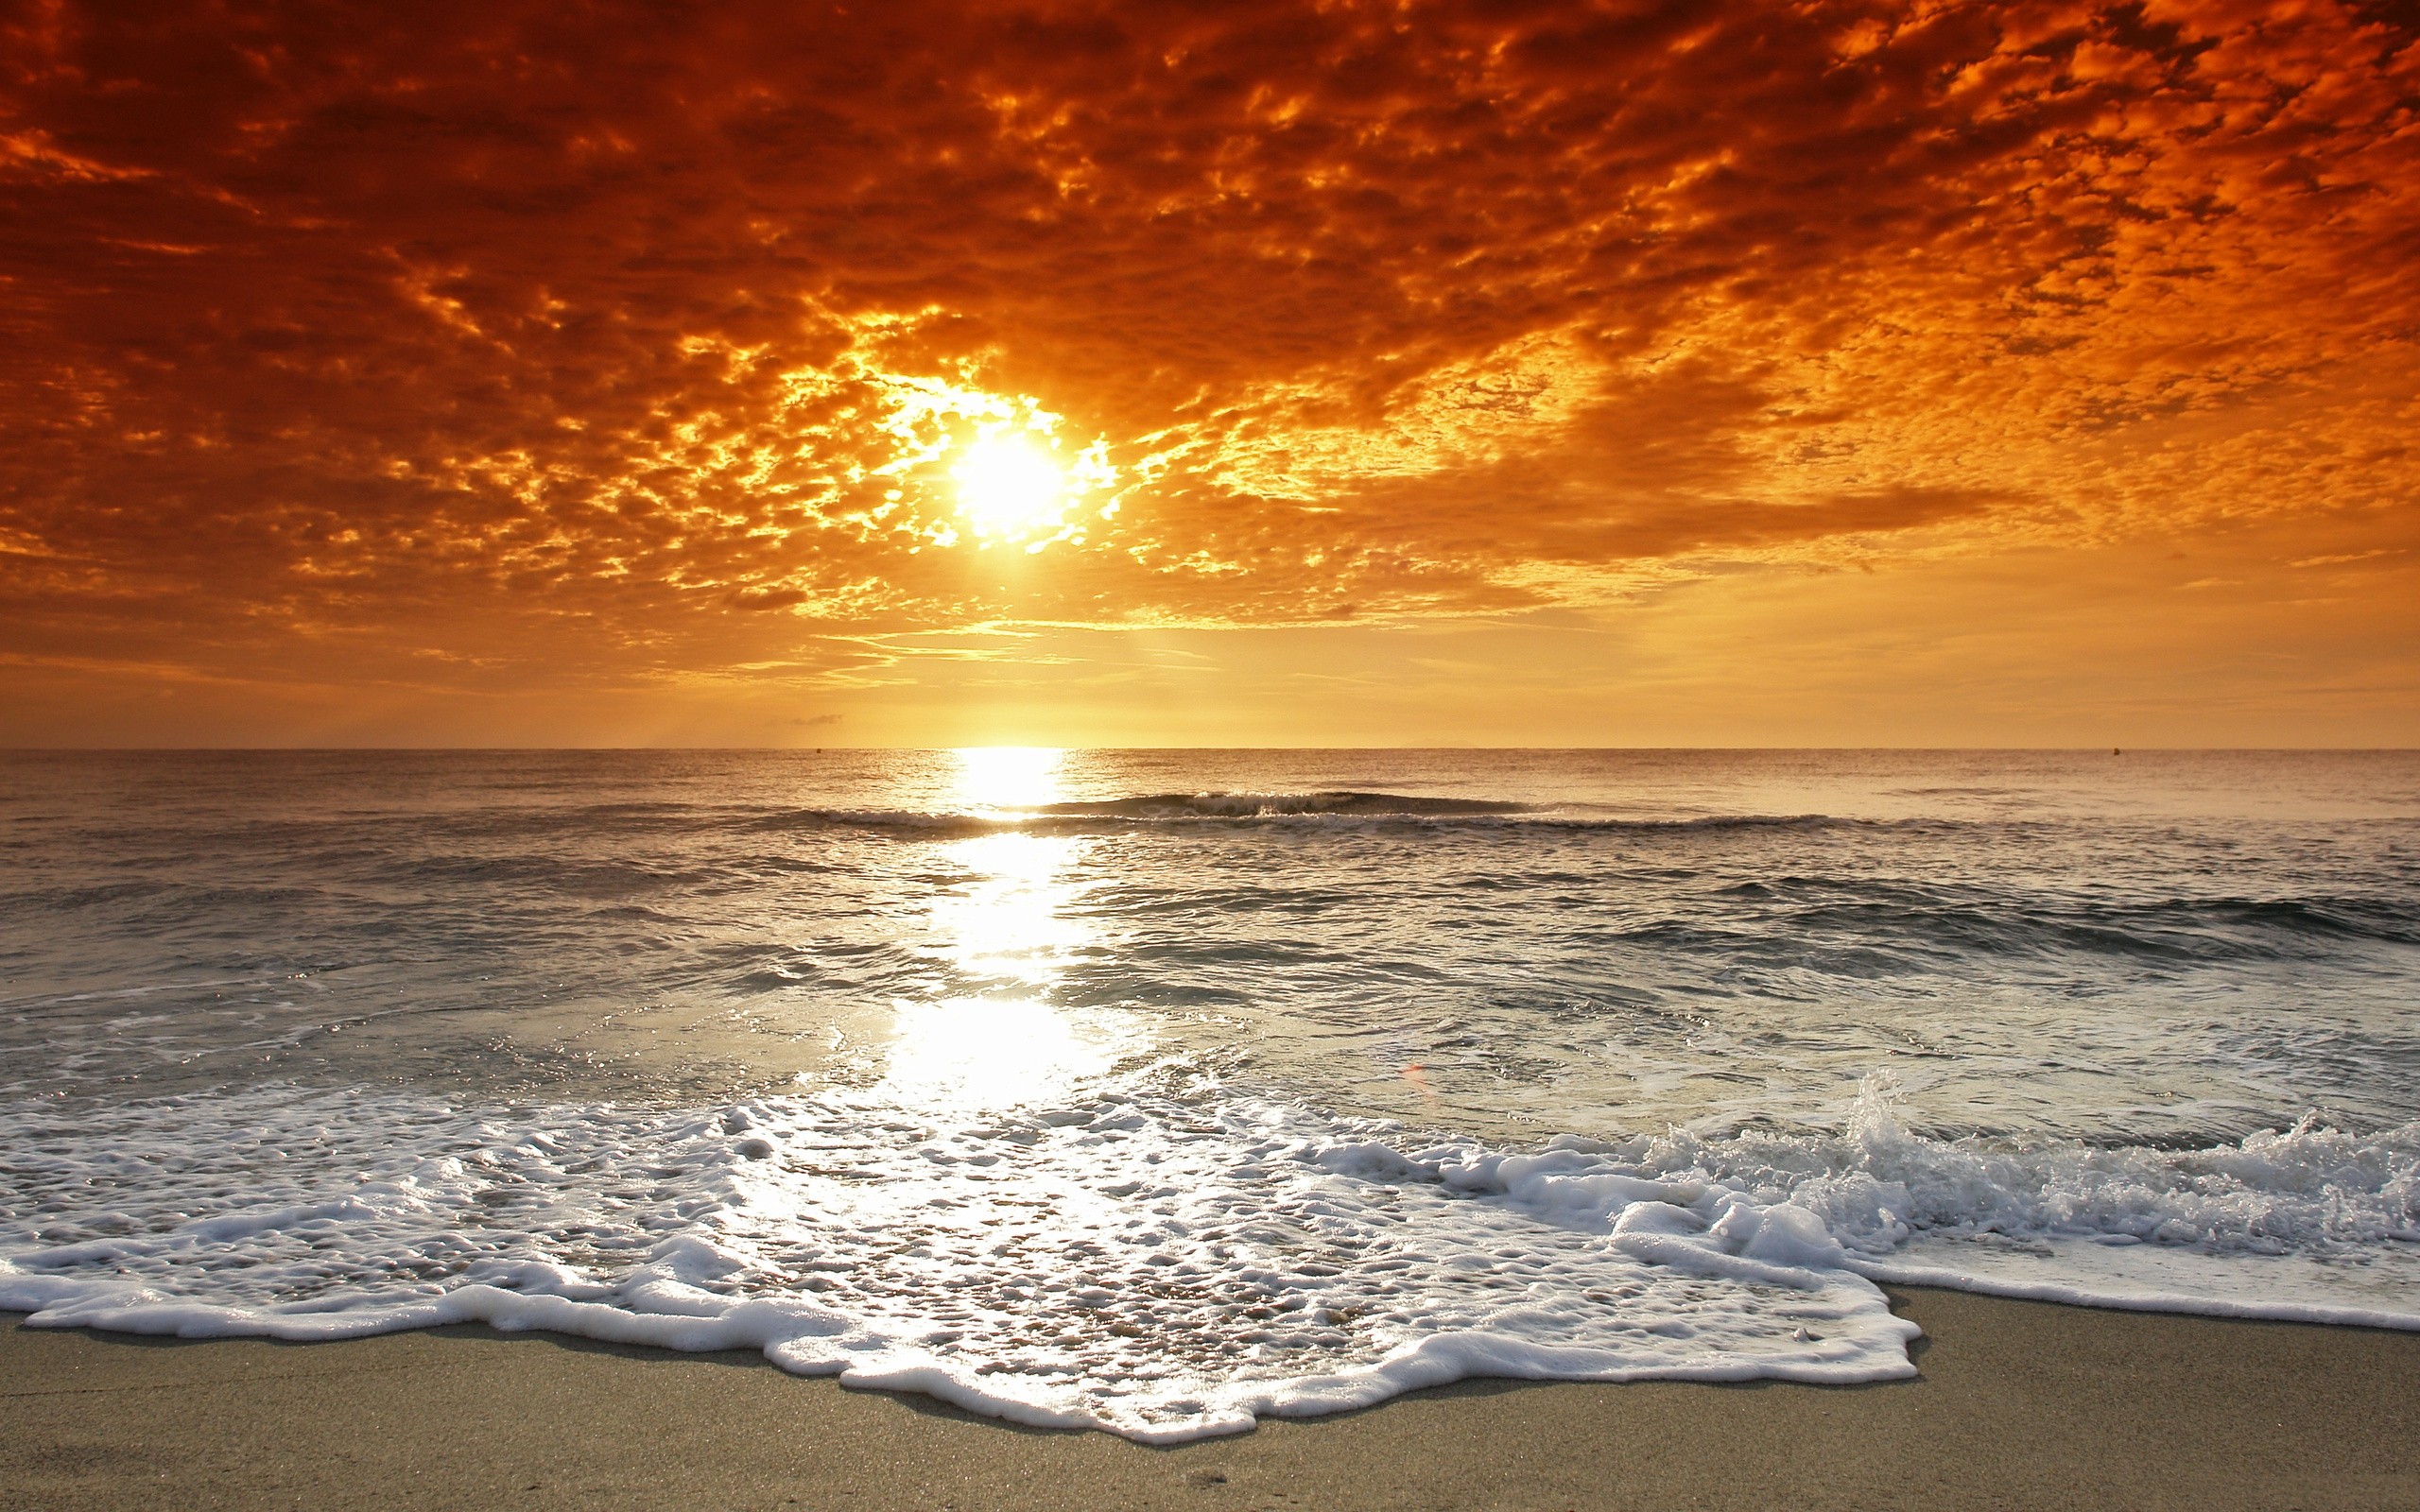 Water clouds sun beach sand wallpaper 2560x1600 15240